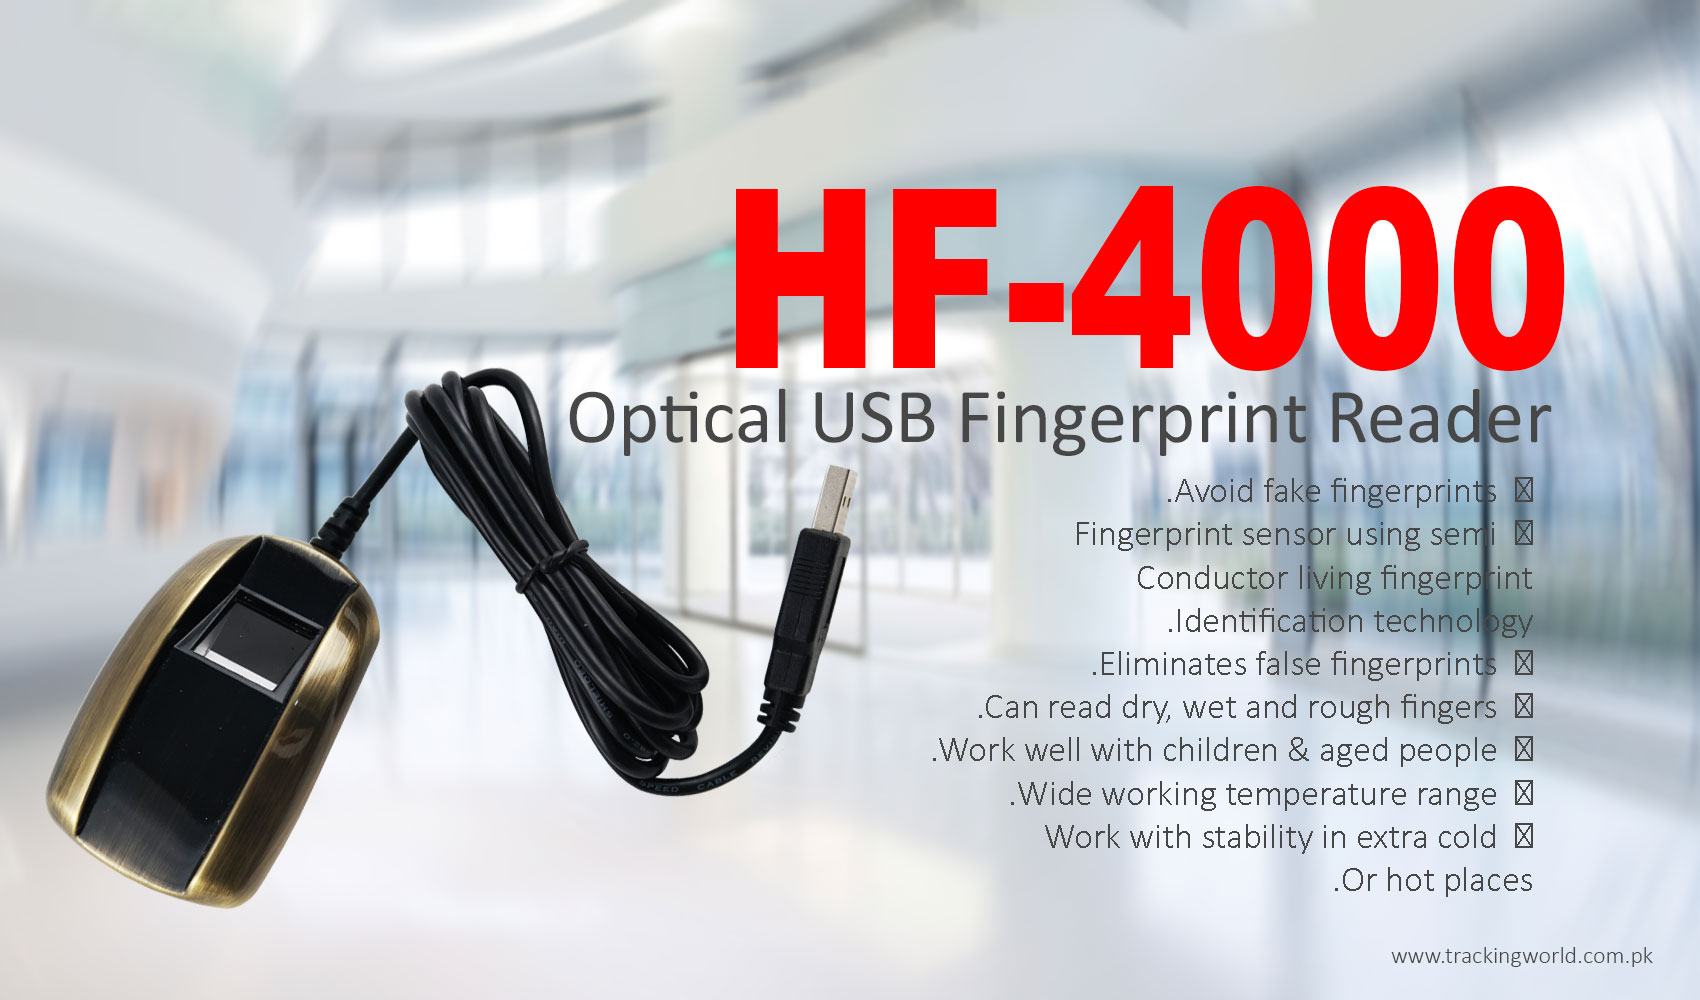 Optical USB Fingerprint Reader - HF4000